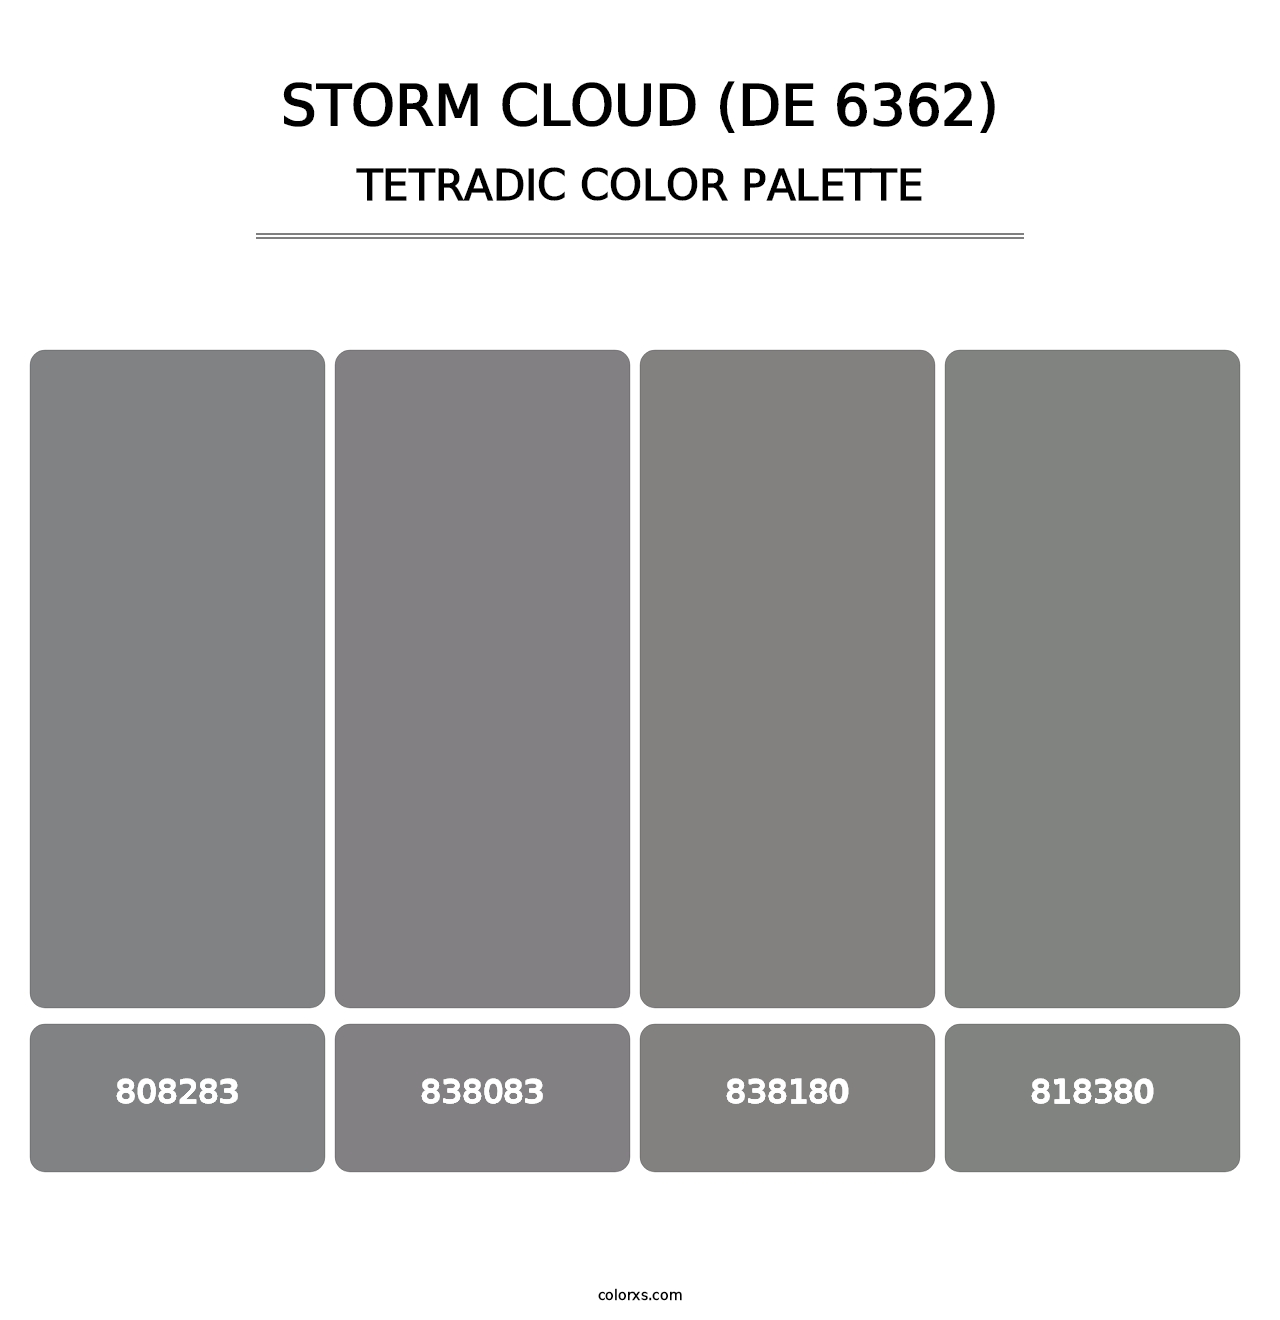 Storm Cloud (DE 6362) - Tetradic Color Palette